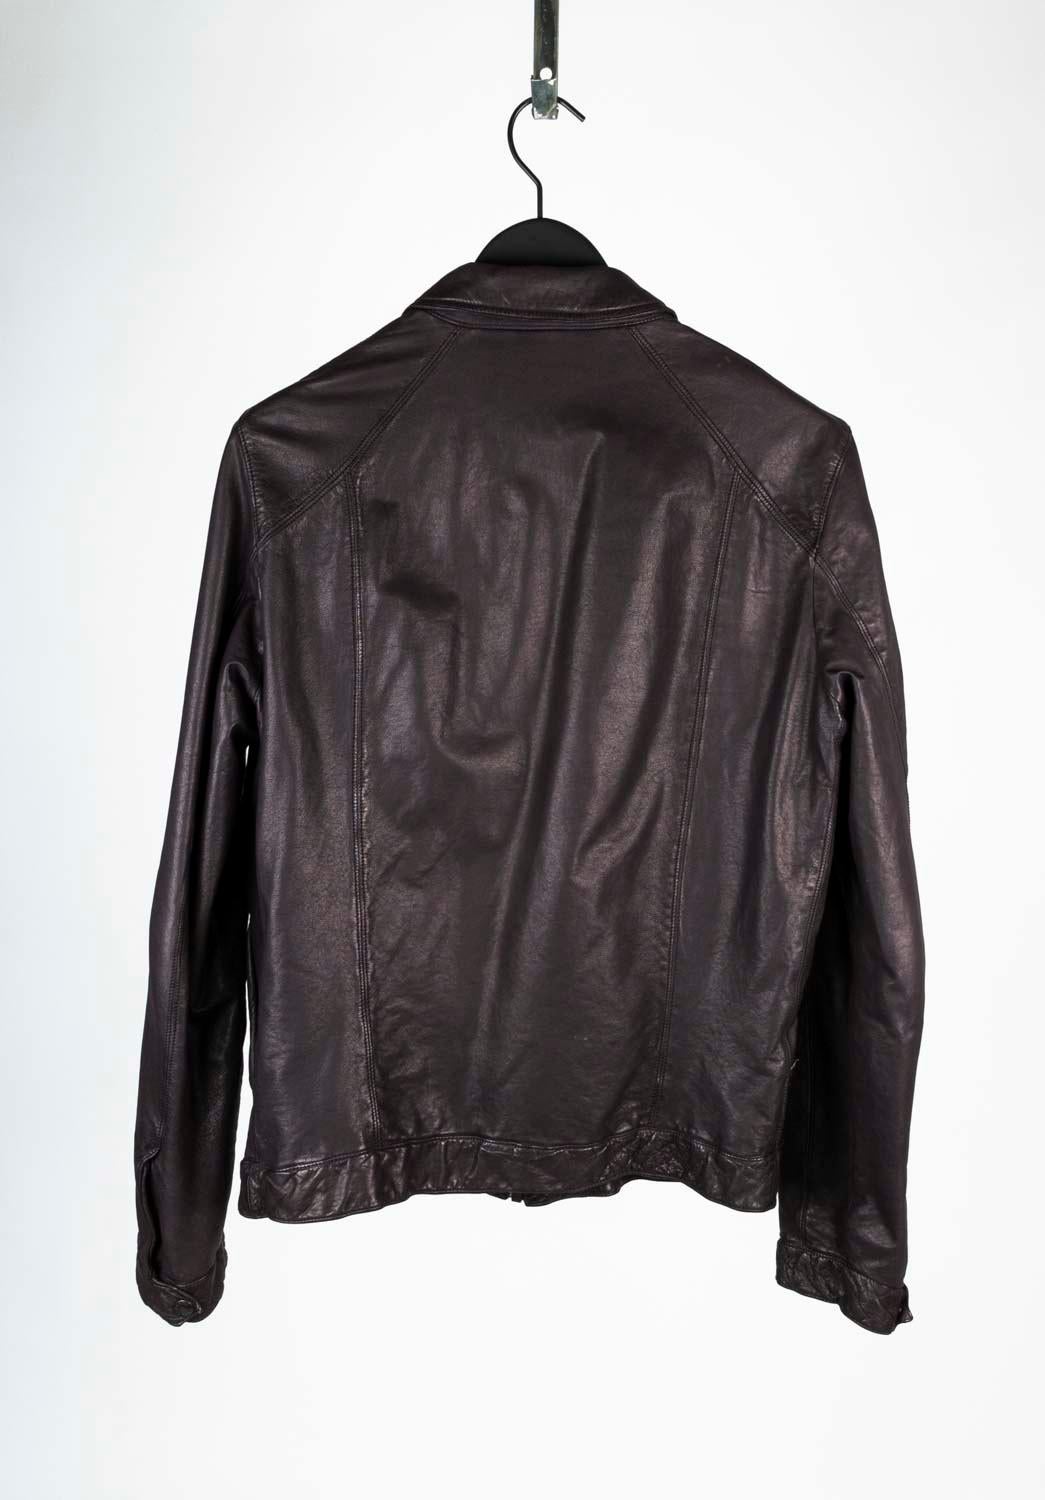 Prada Men Leather Jacket Brown Biker Size L, S562 For Sale 1